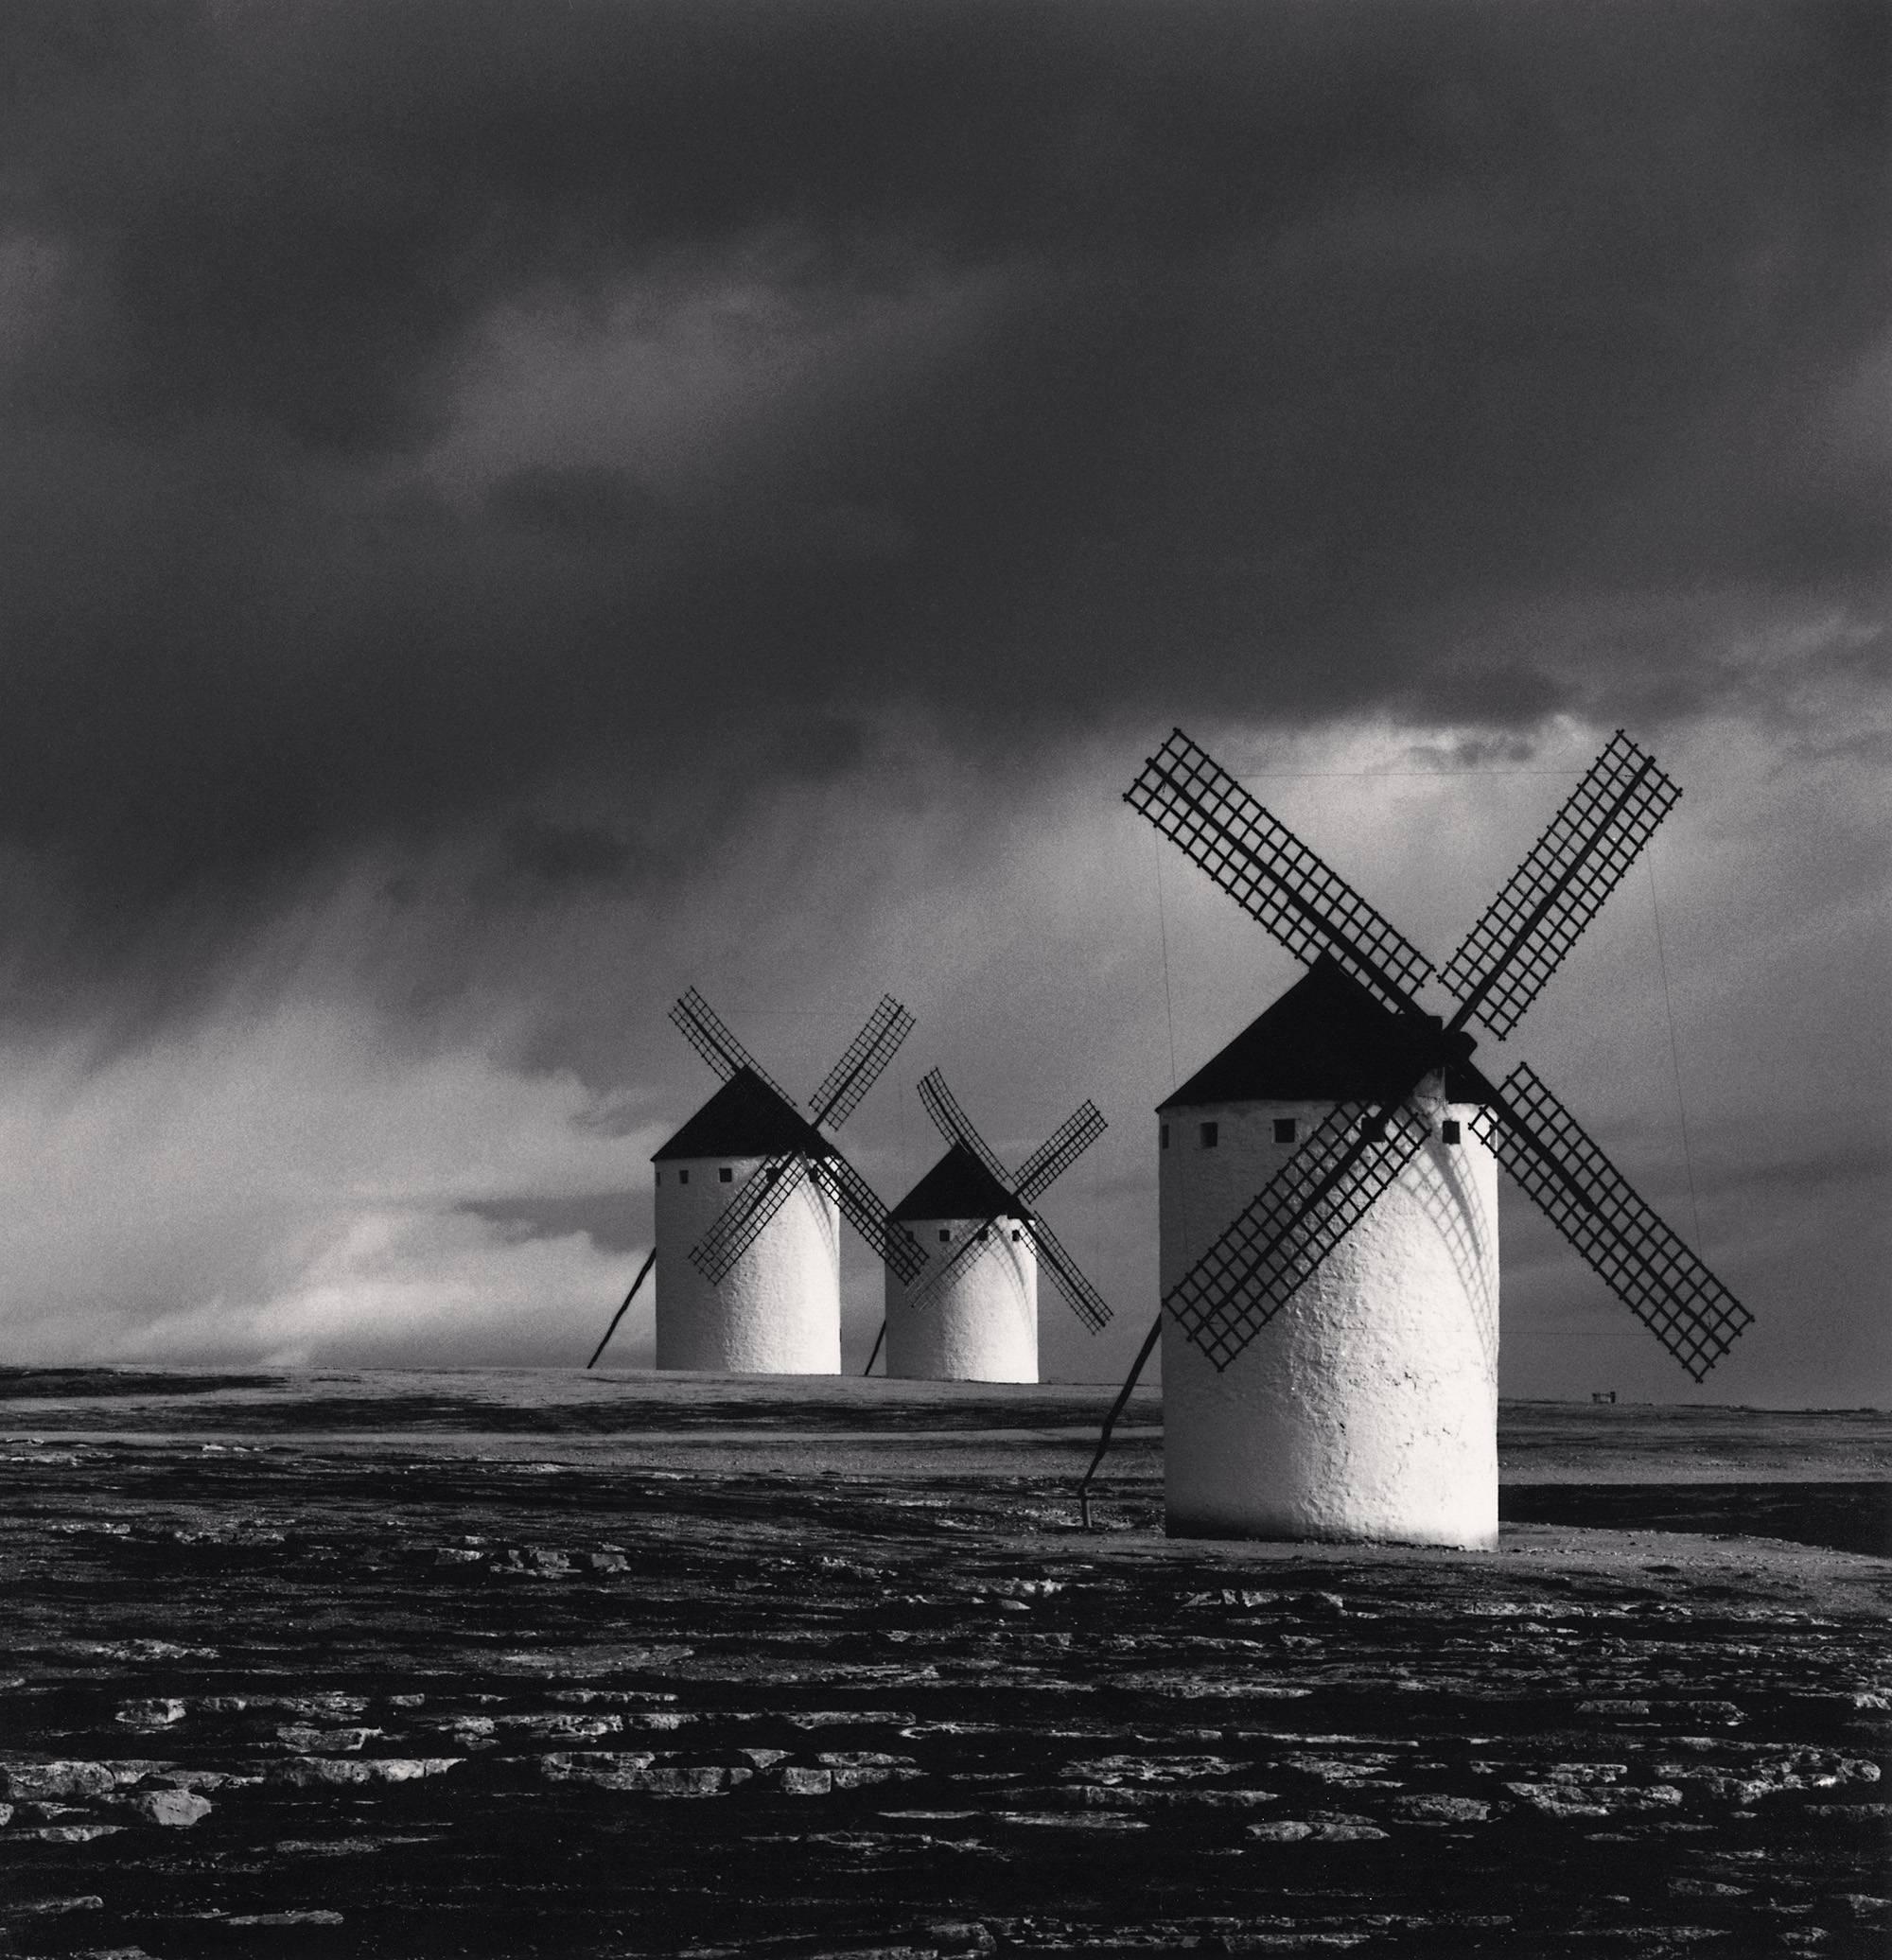 Michael Kenna Landscape Photograph - Quixote's Giants, Study 1, Campo de Criptana, Spain. 